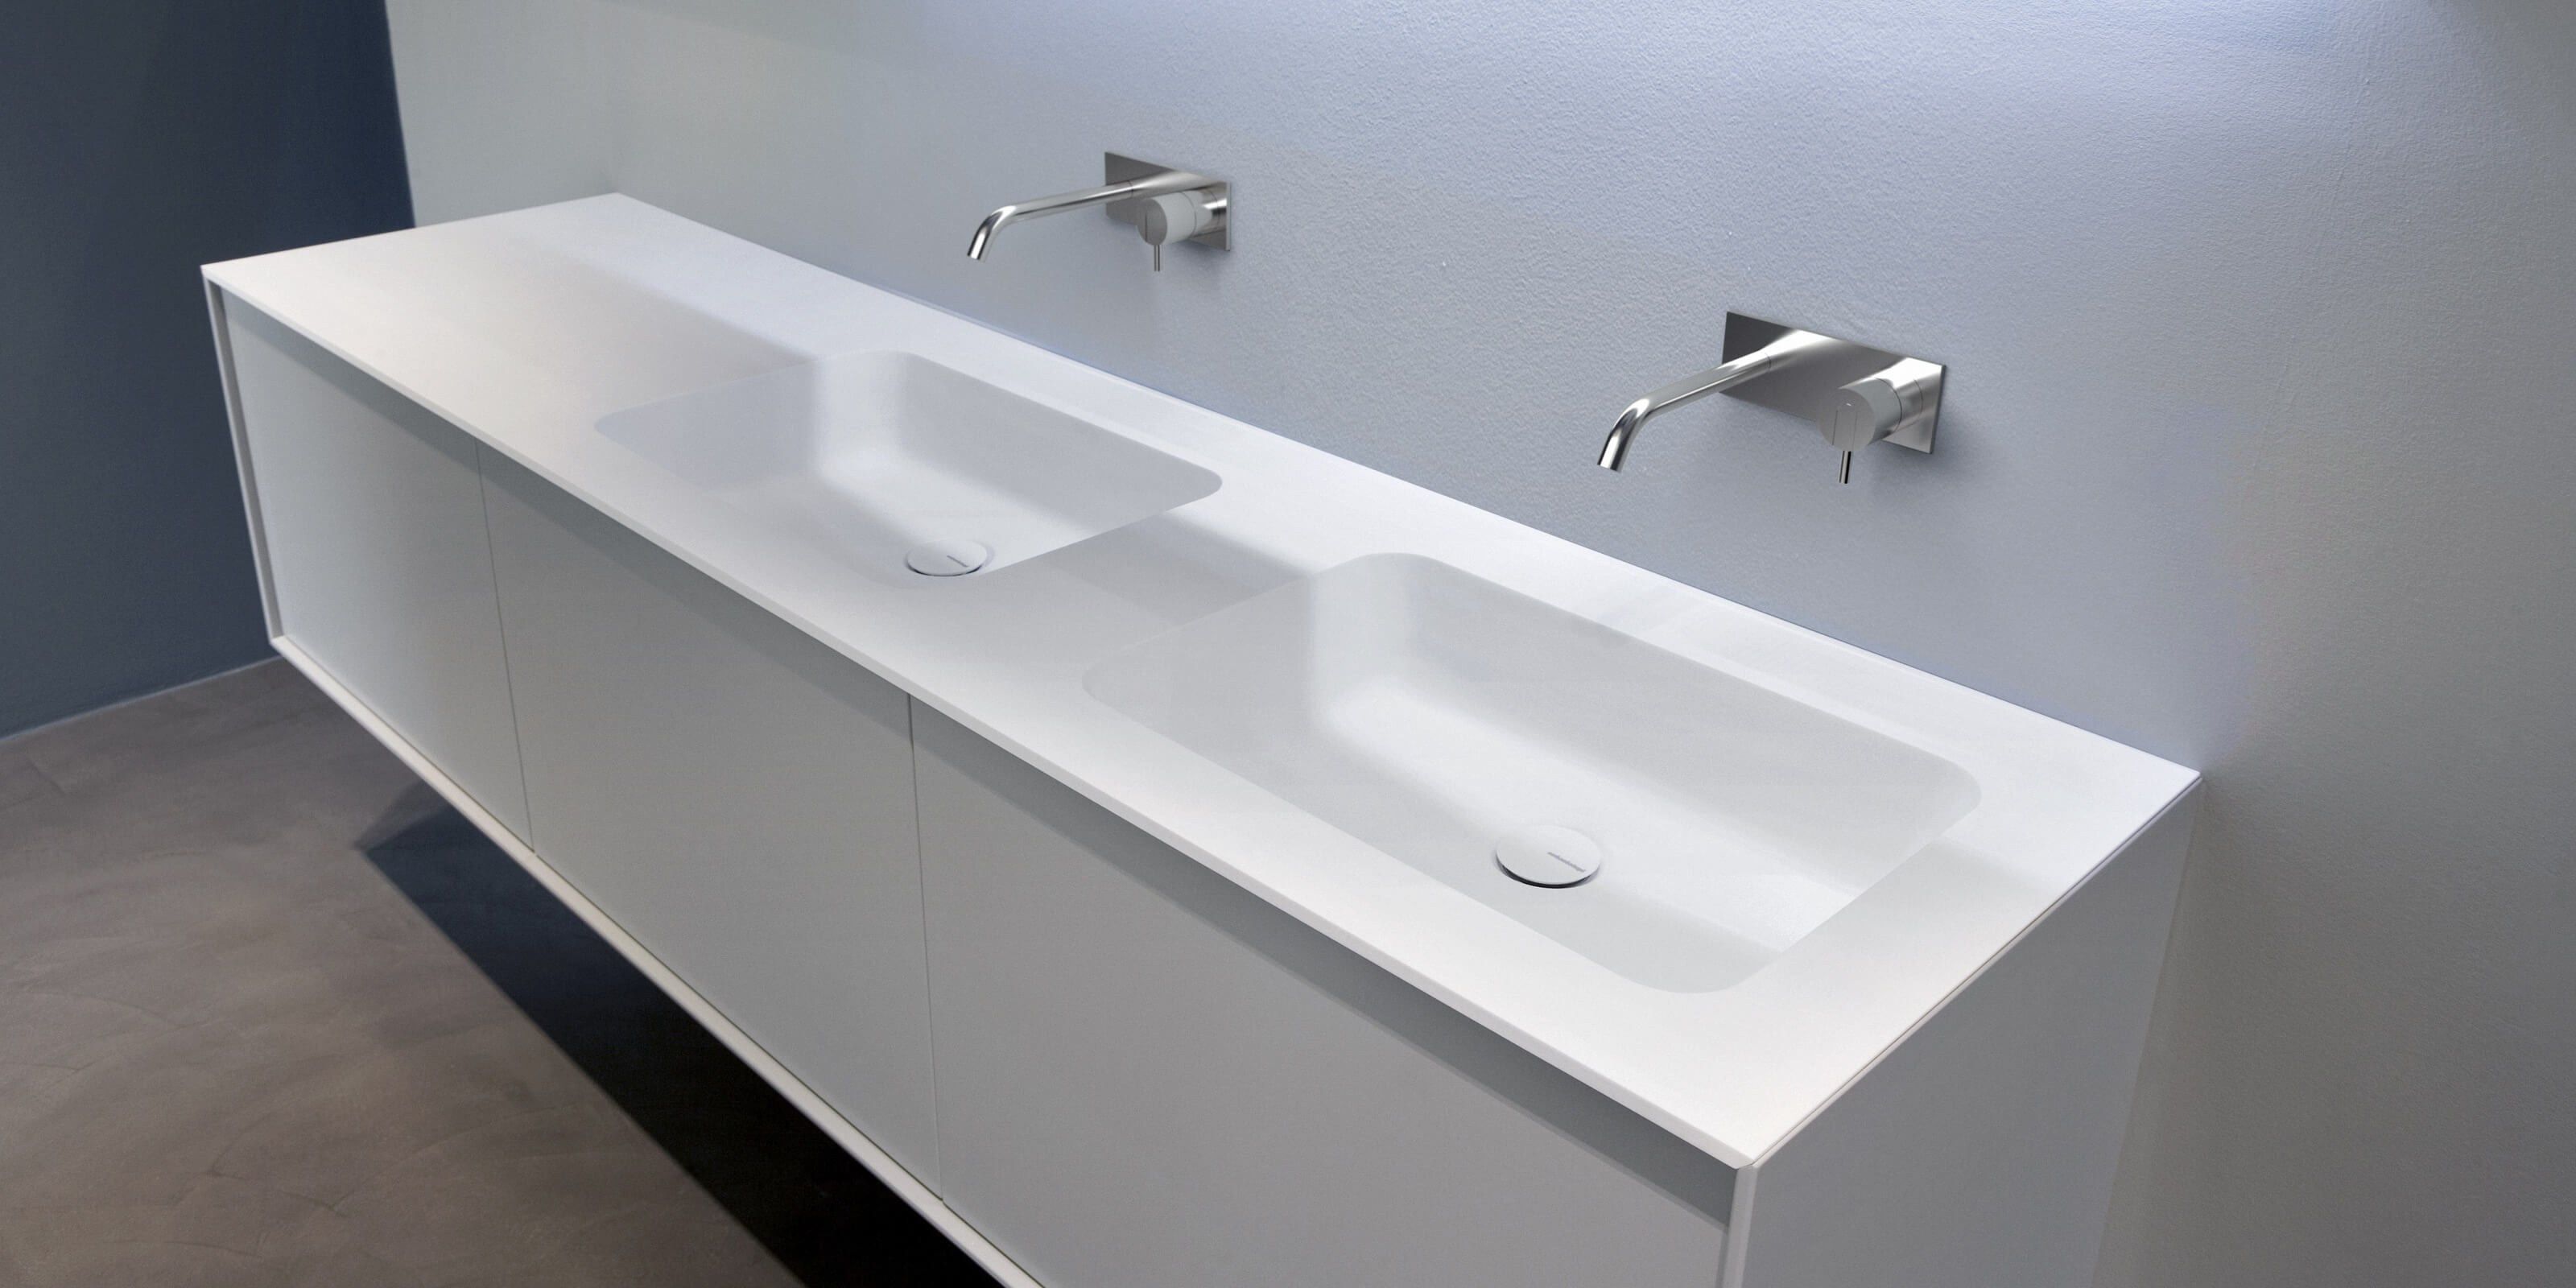 Corian washbasin countertop ARCO By Antonio Lupi Design design